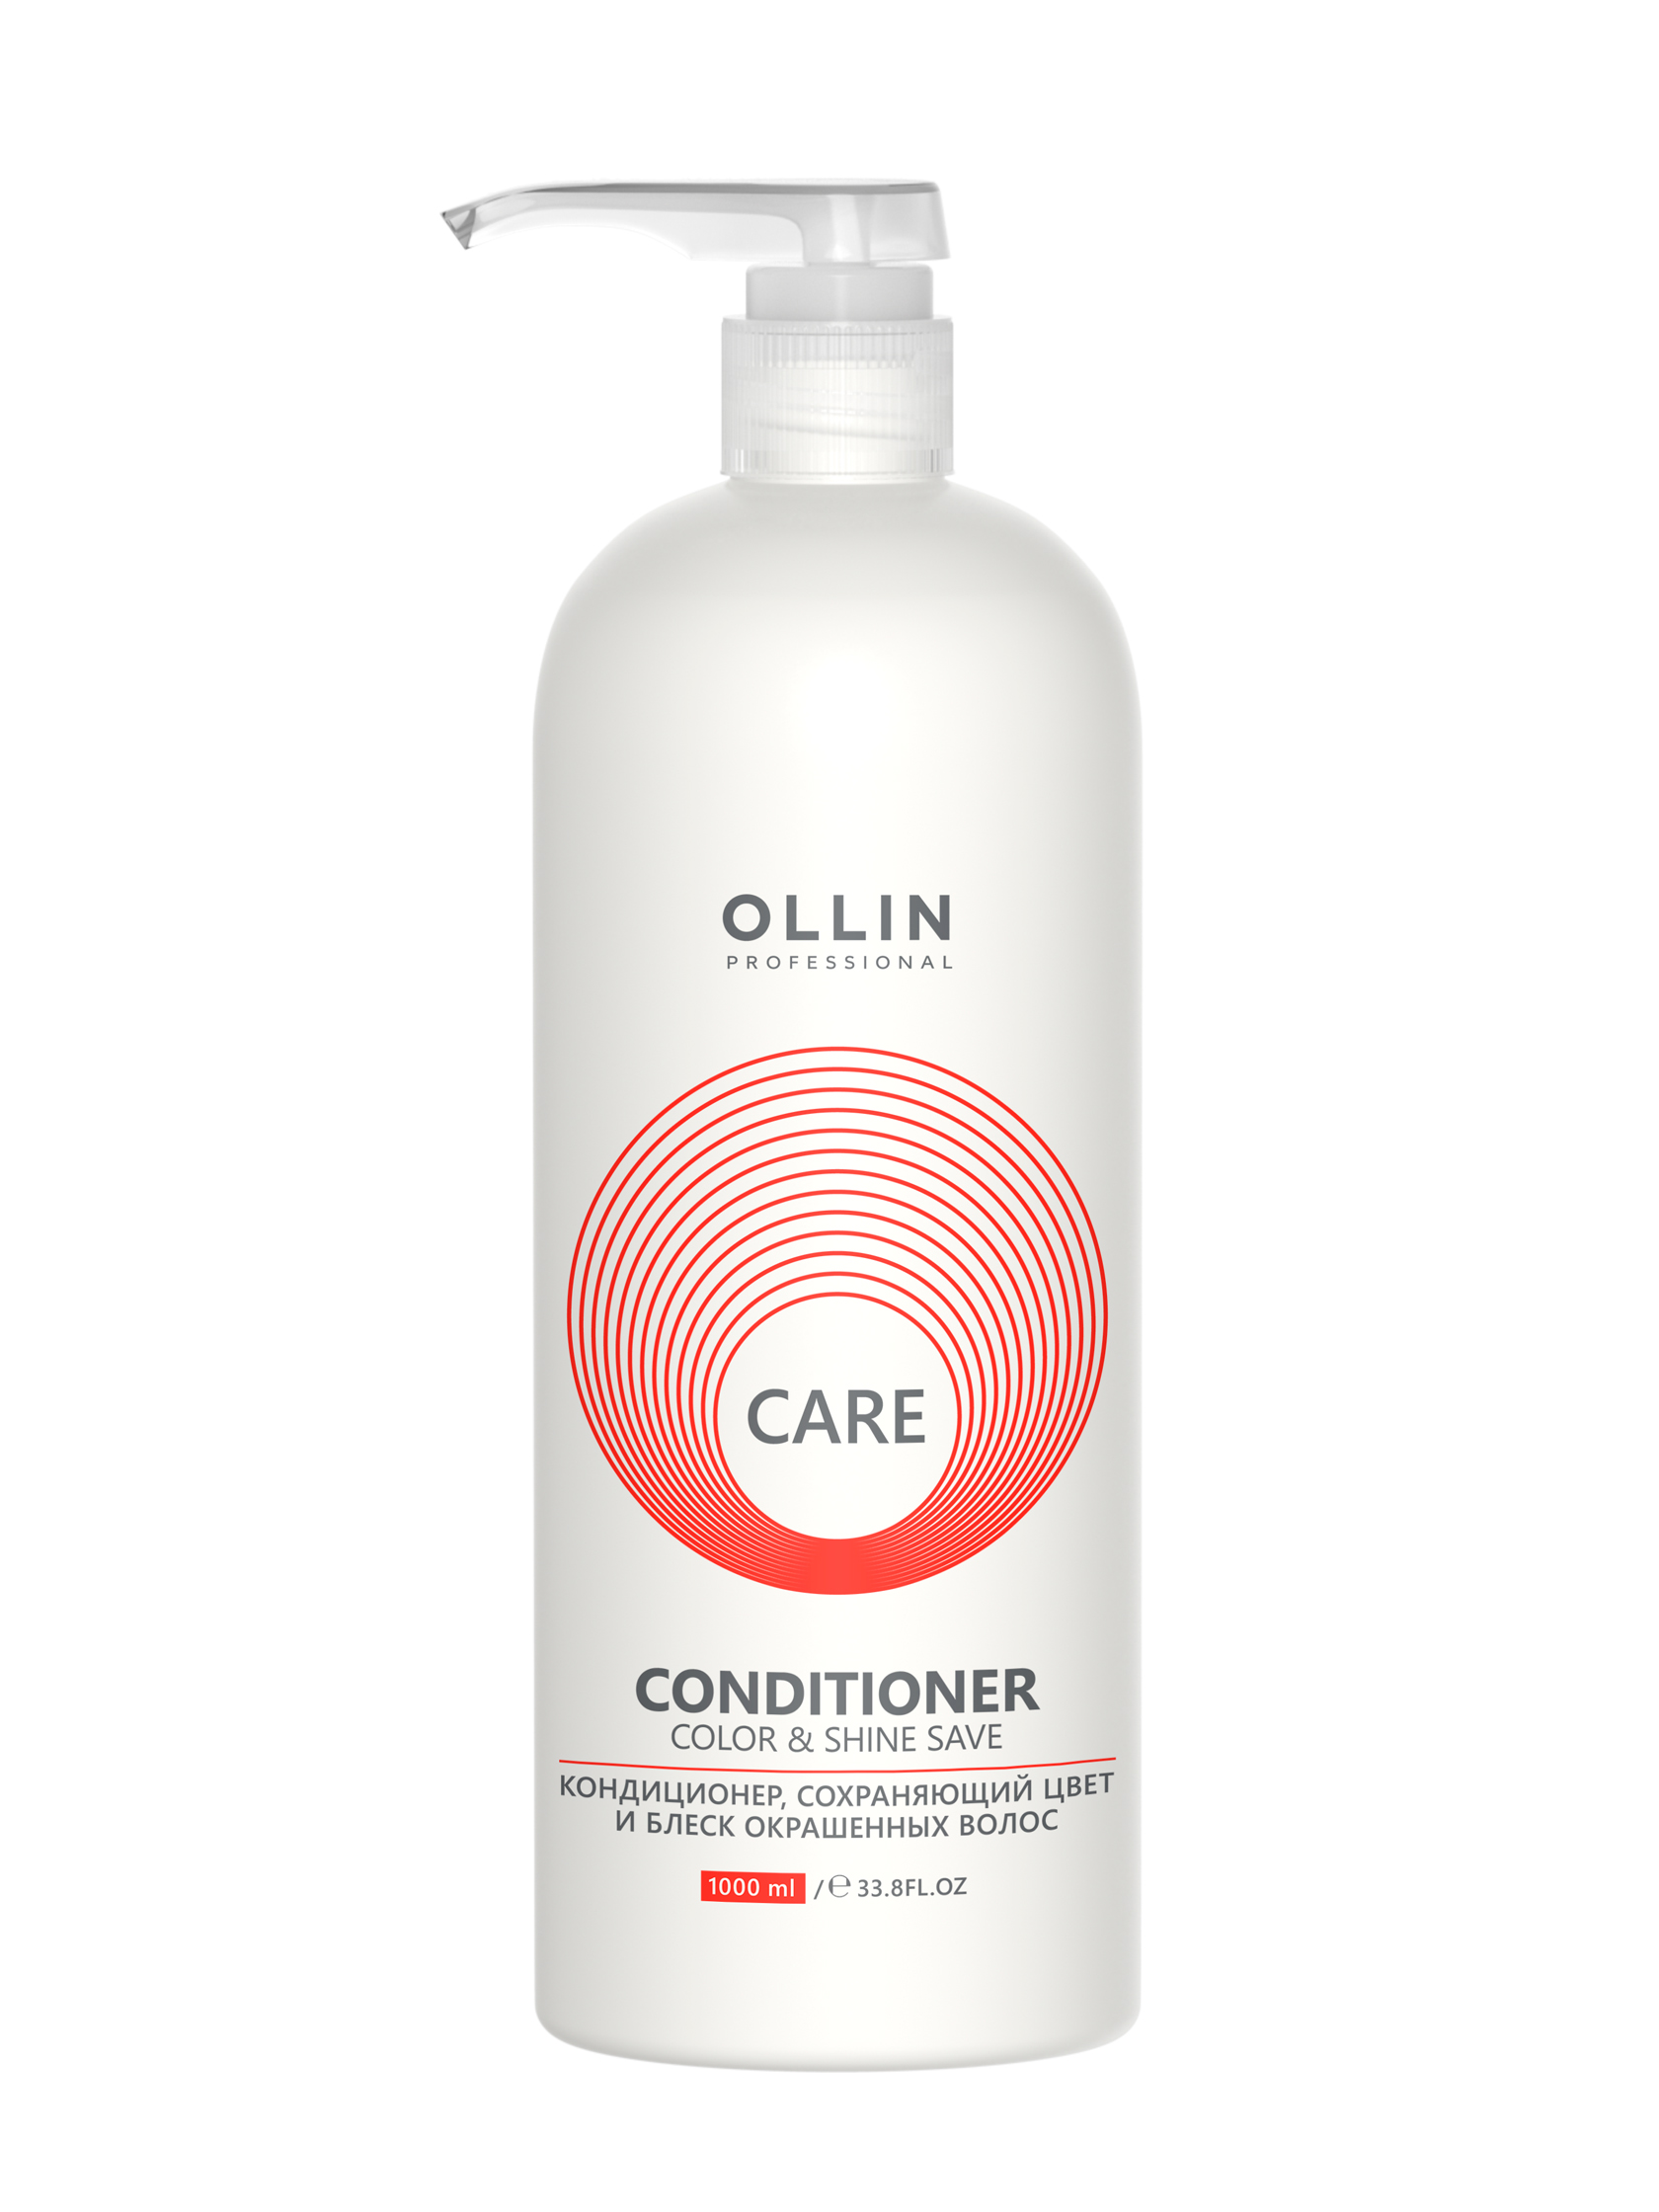 OLLIN CARE Кондиционер, сохраняющий цвет 1000мл и блеск окрашенных волос